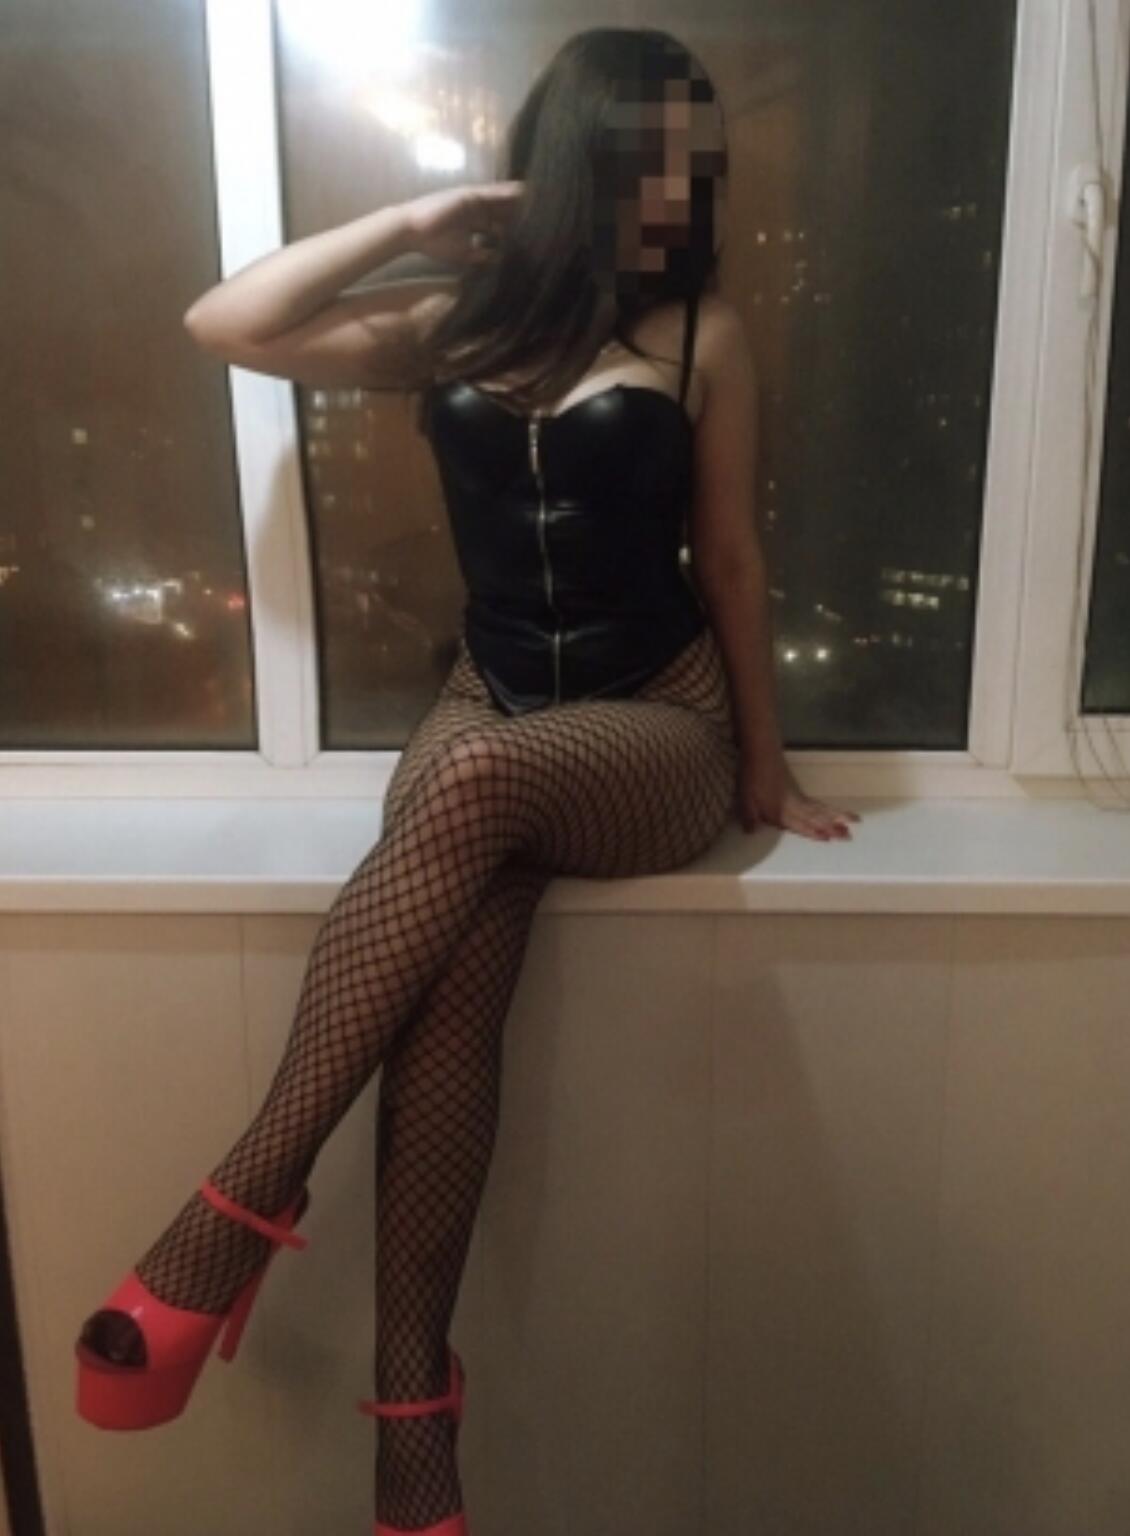 Проститутка Ася, фото 2, тел: 0930091090. В центре города - Киев